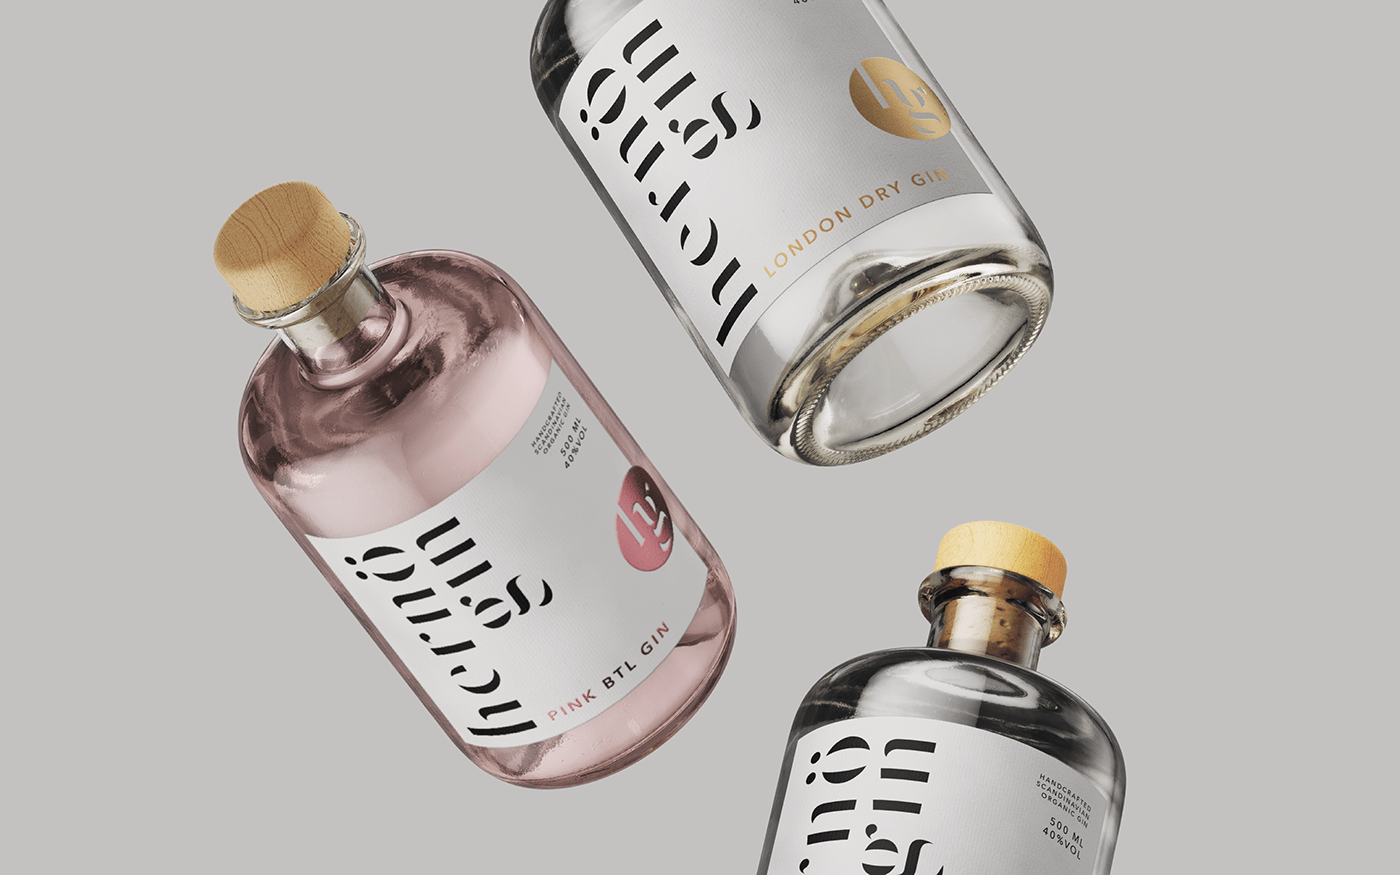 bottle branding  gin label design logo redesign packaging design rebranding